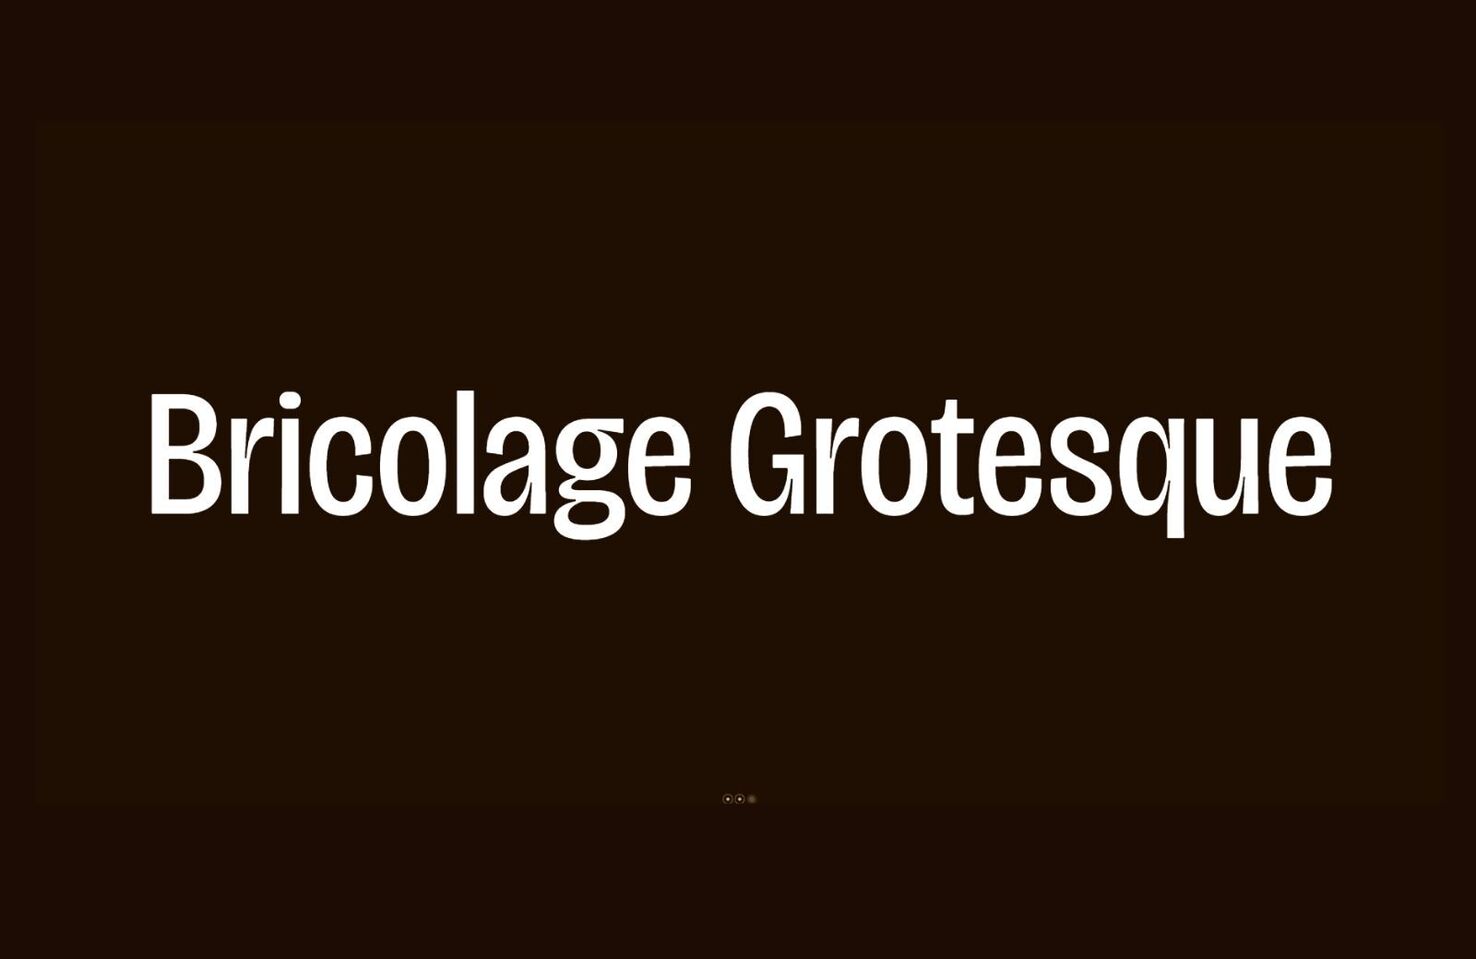 Пример шрифта Bricolage Grotesque SemiCondensed ExtraBold